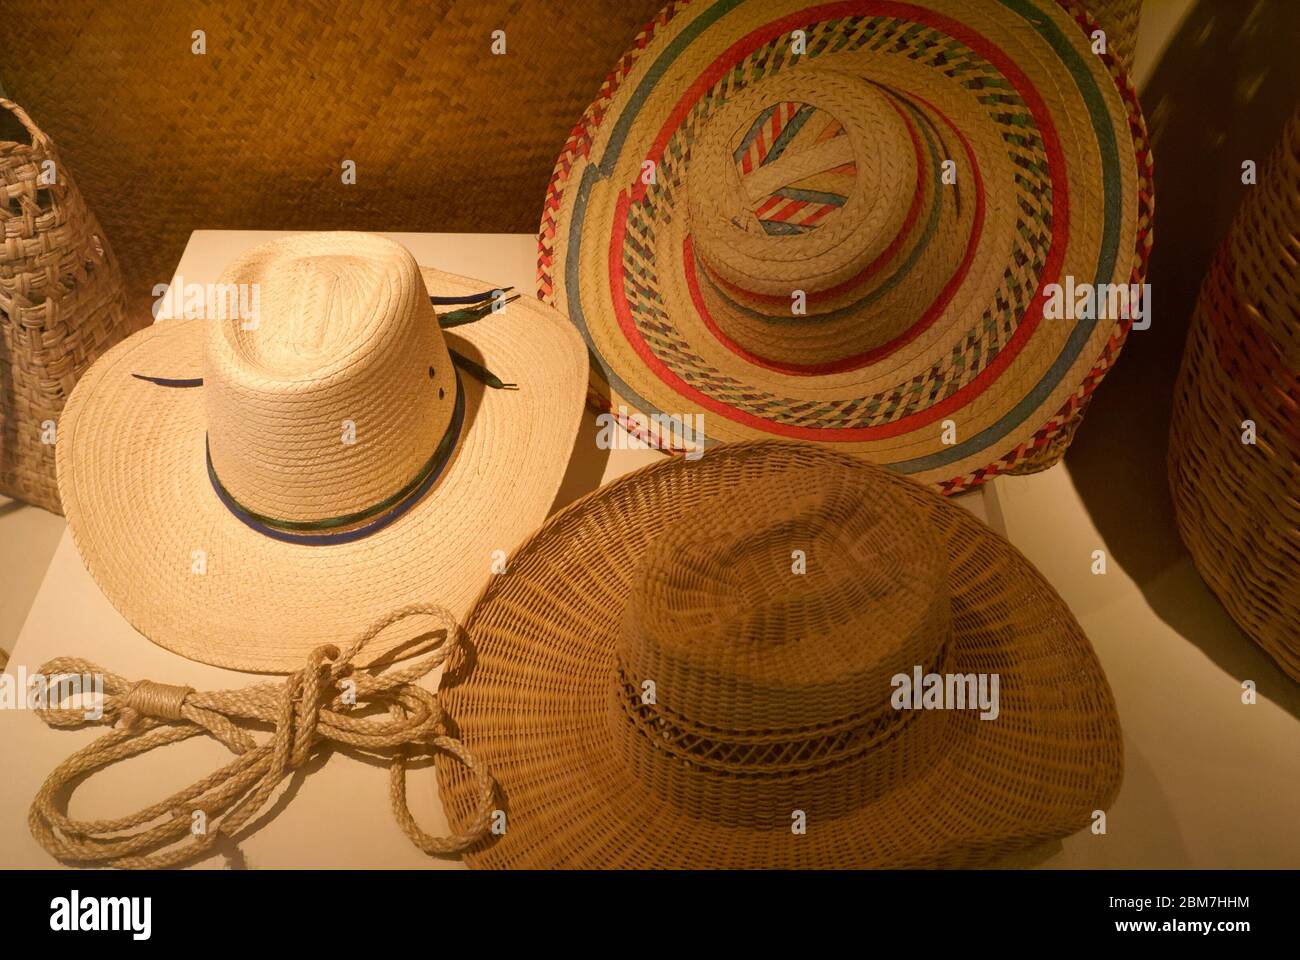 Salvadoran traditional men's straw hats in the Museo Nacional de Antropologia David J. Guzman in San Salvador, El Salvador, Central America Stock Photo